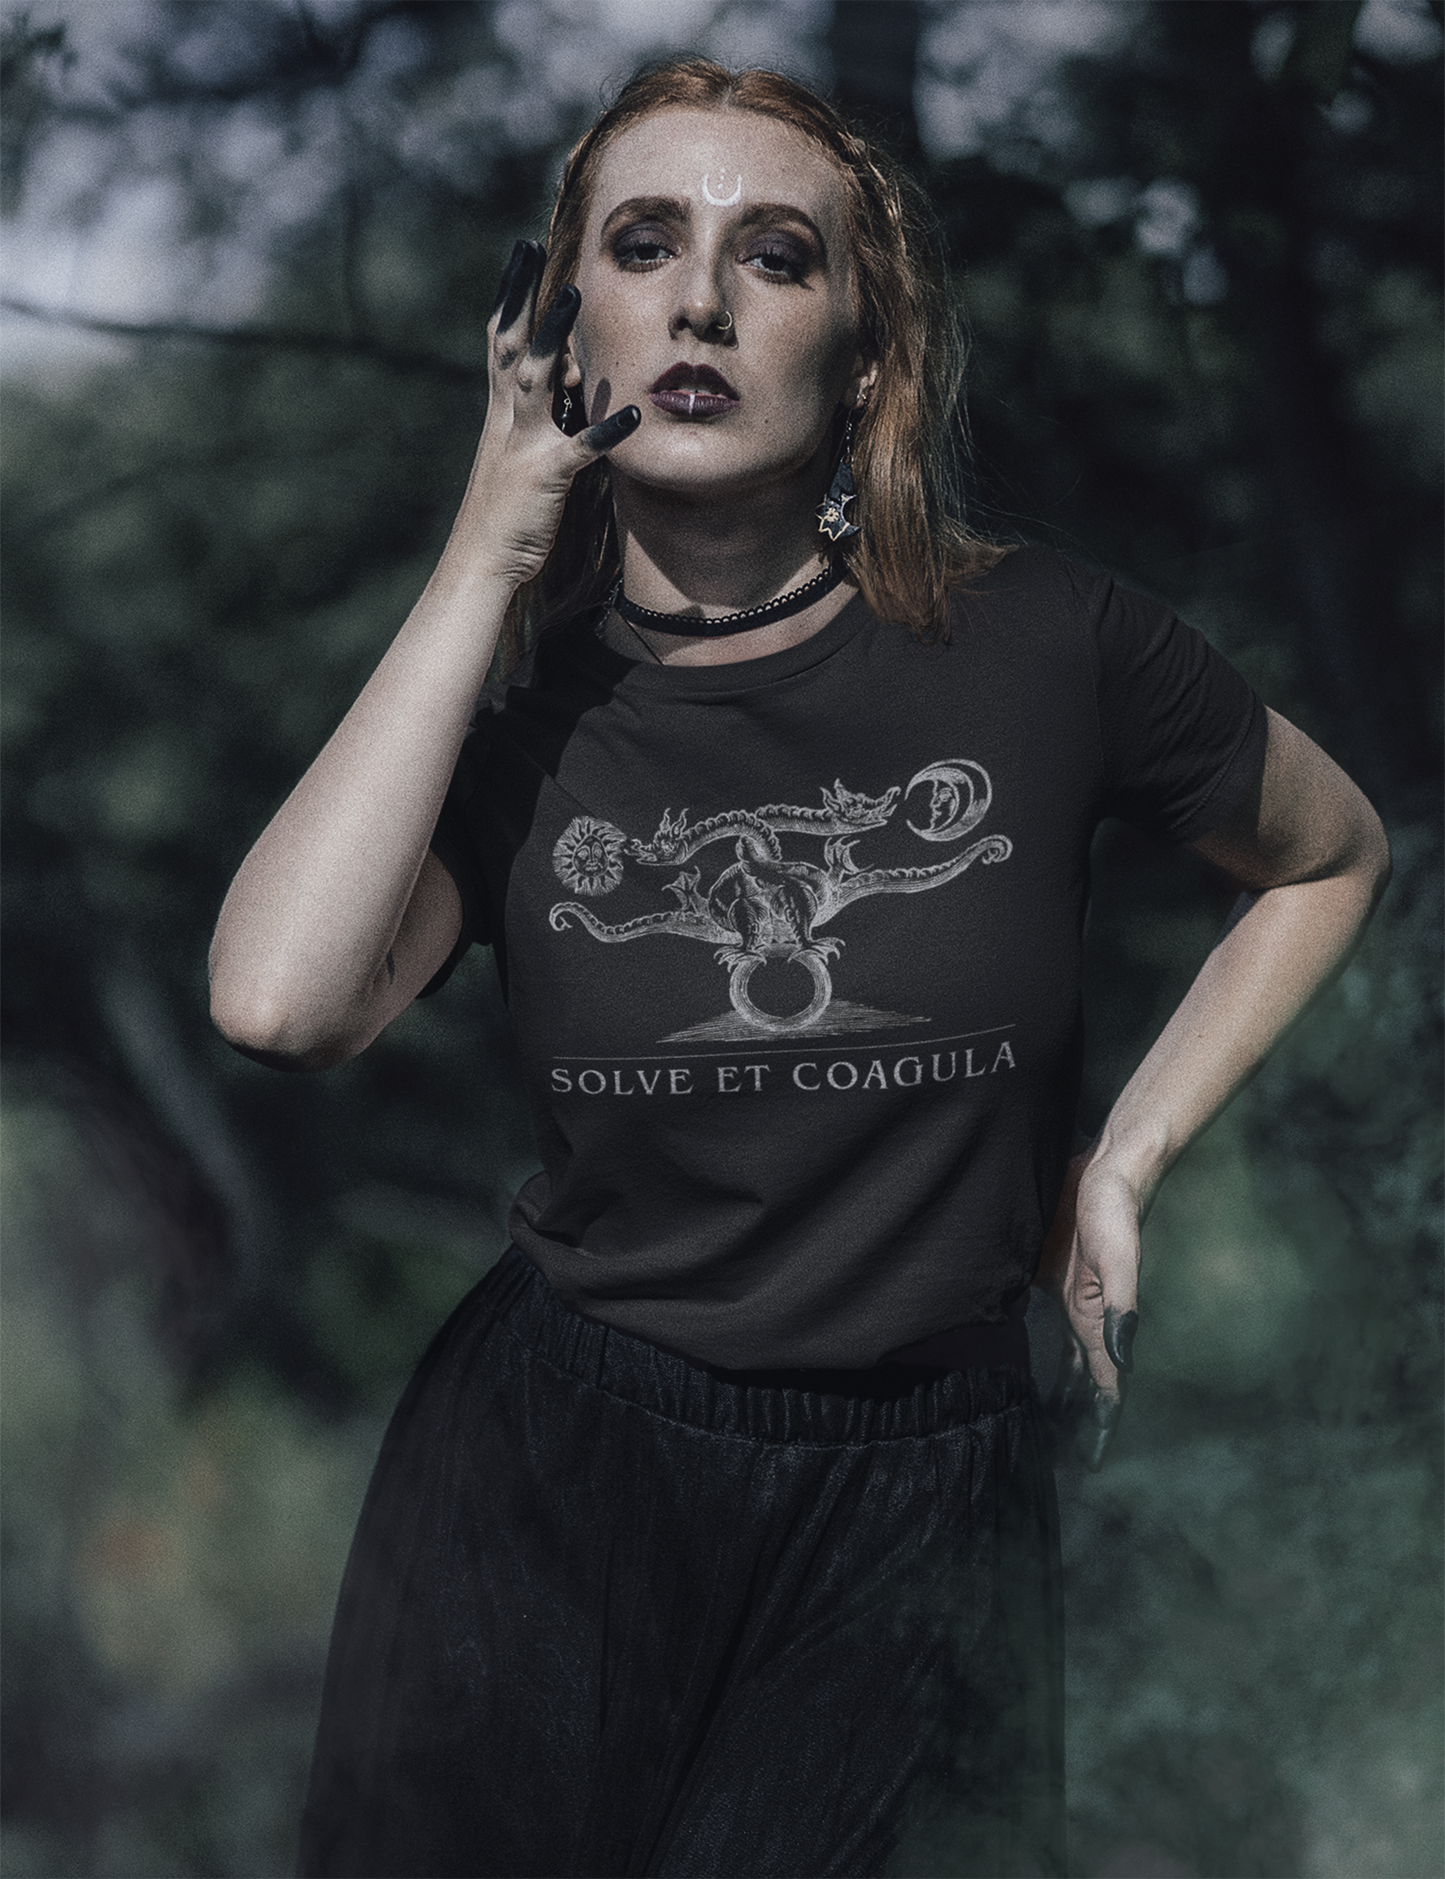 Solve Et Coagula Esoteric Occult Alchemy Plus Size Dragon Shirt